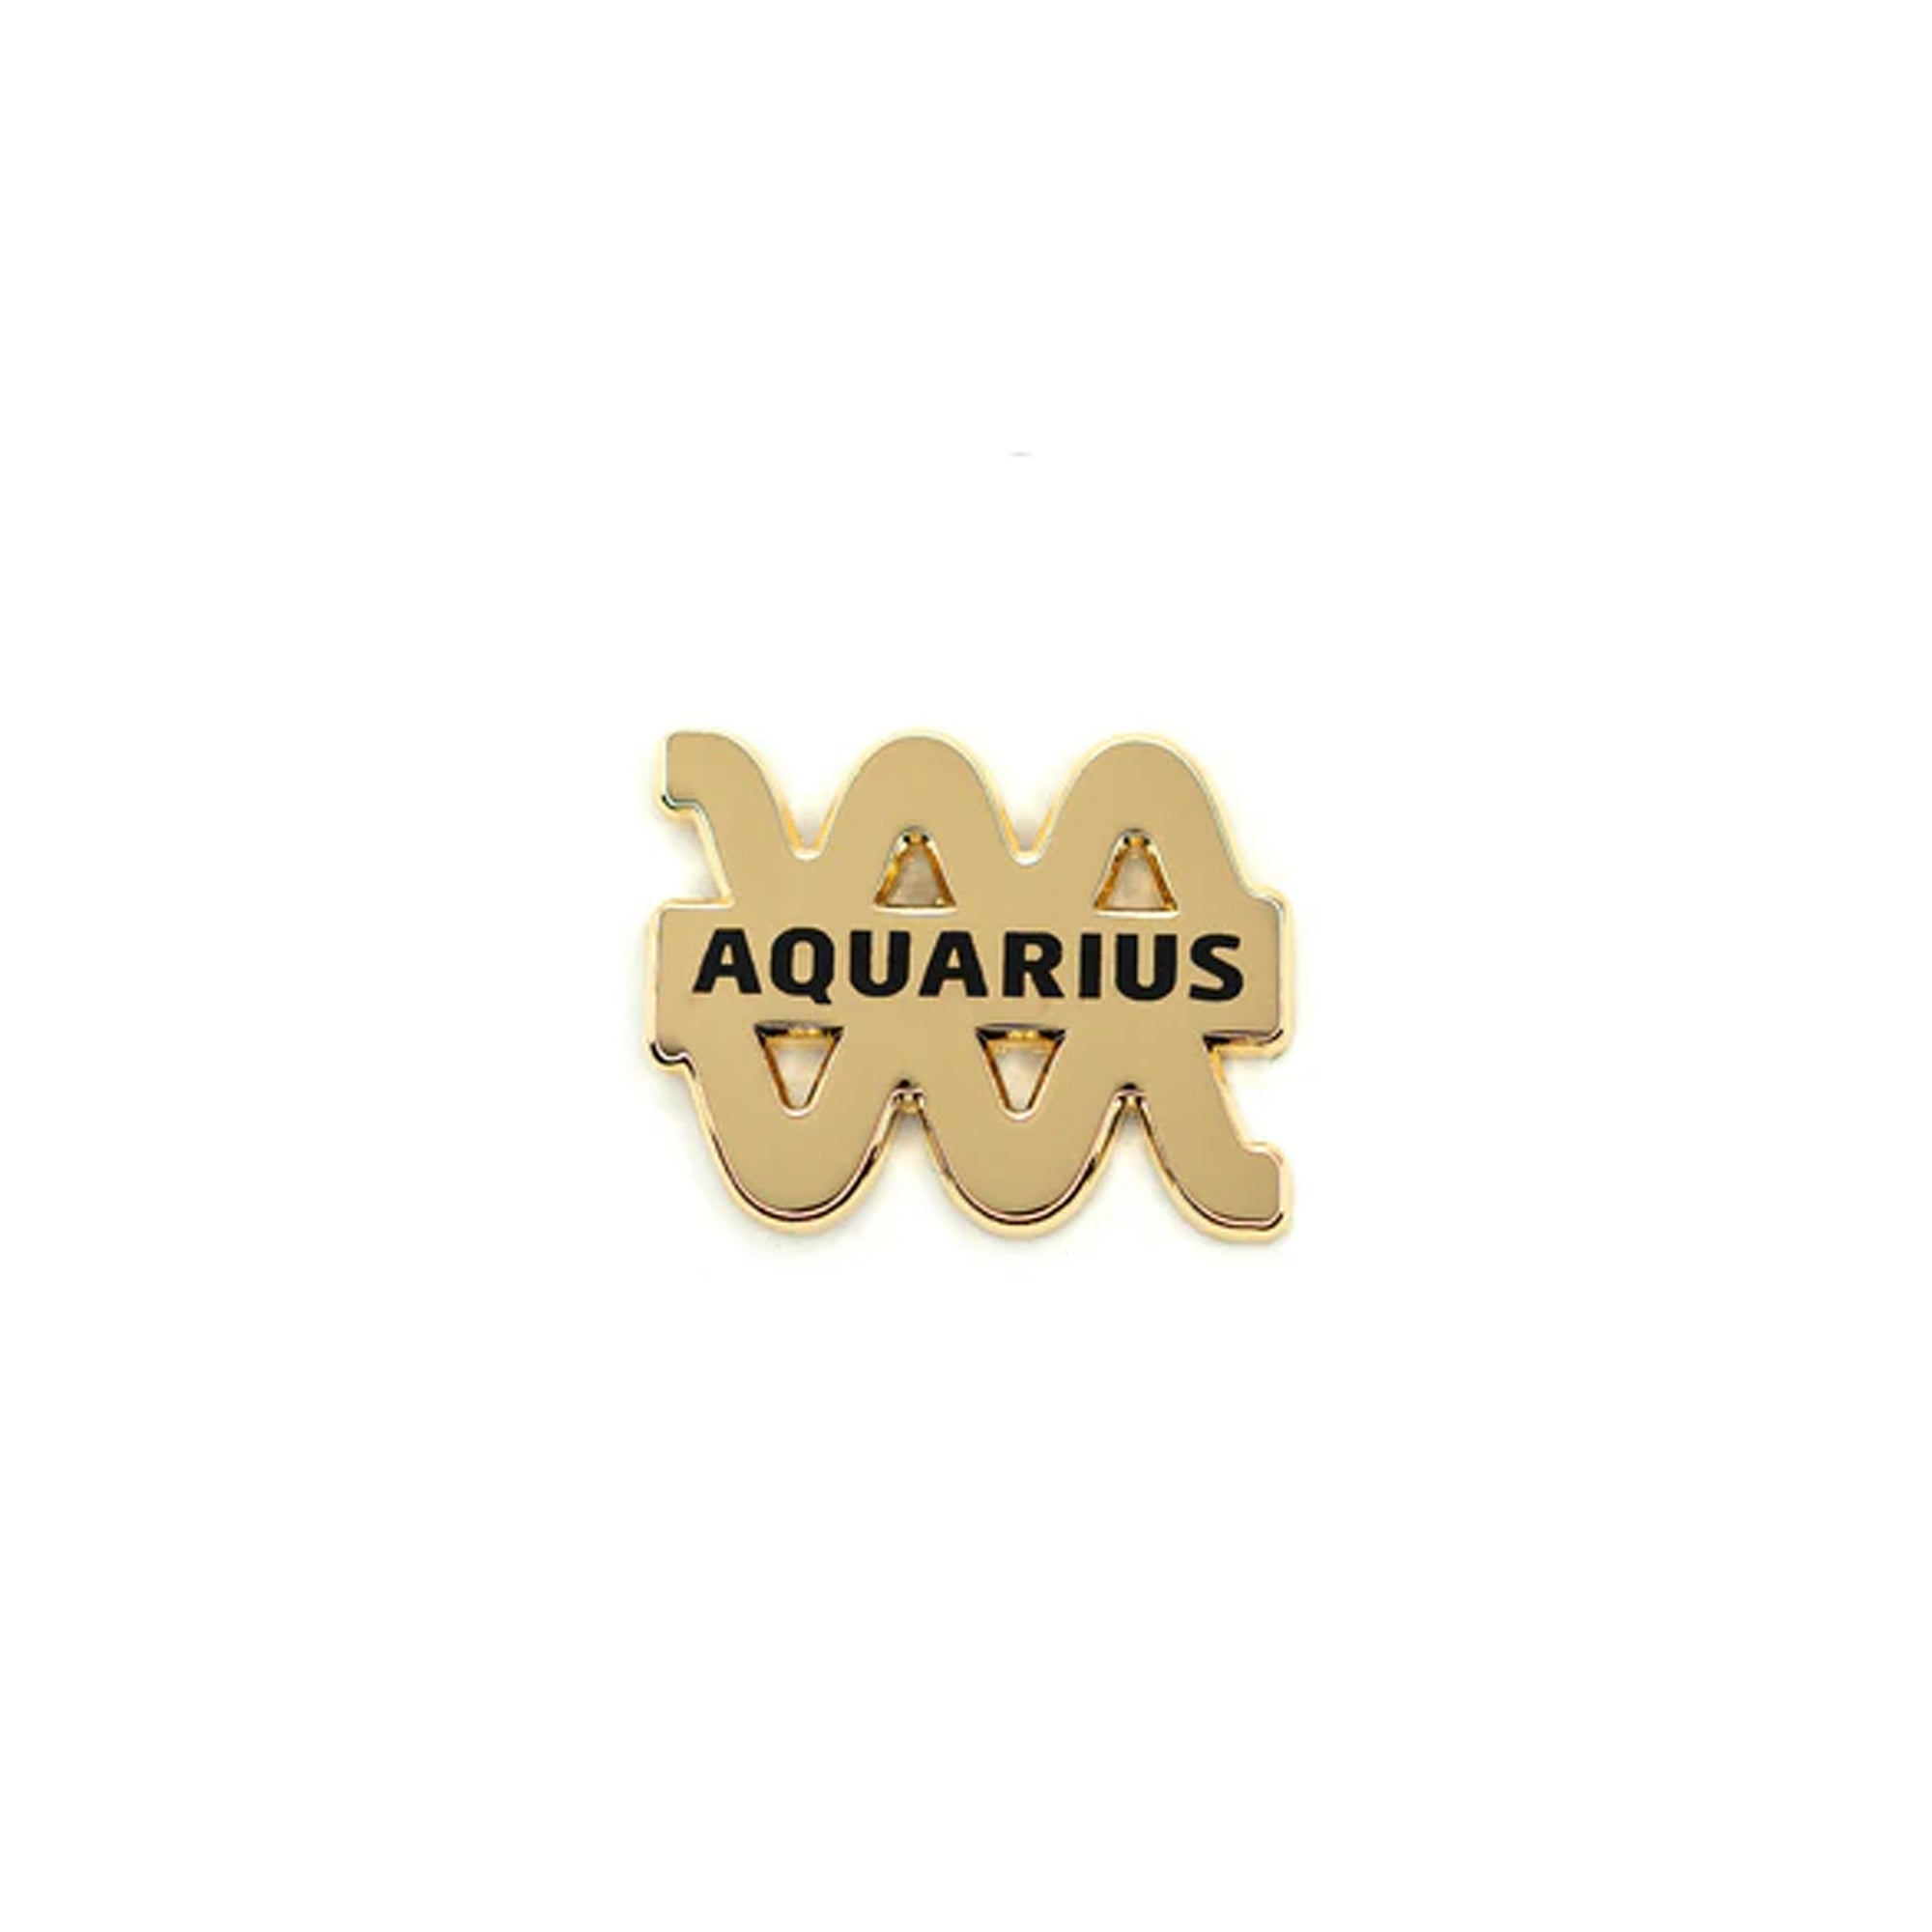 Hdqtrs Aquarius Pin